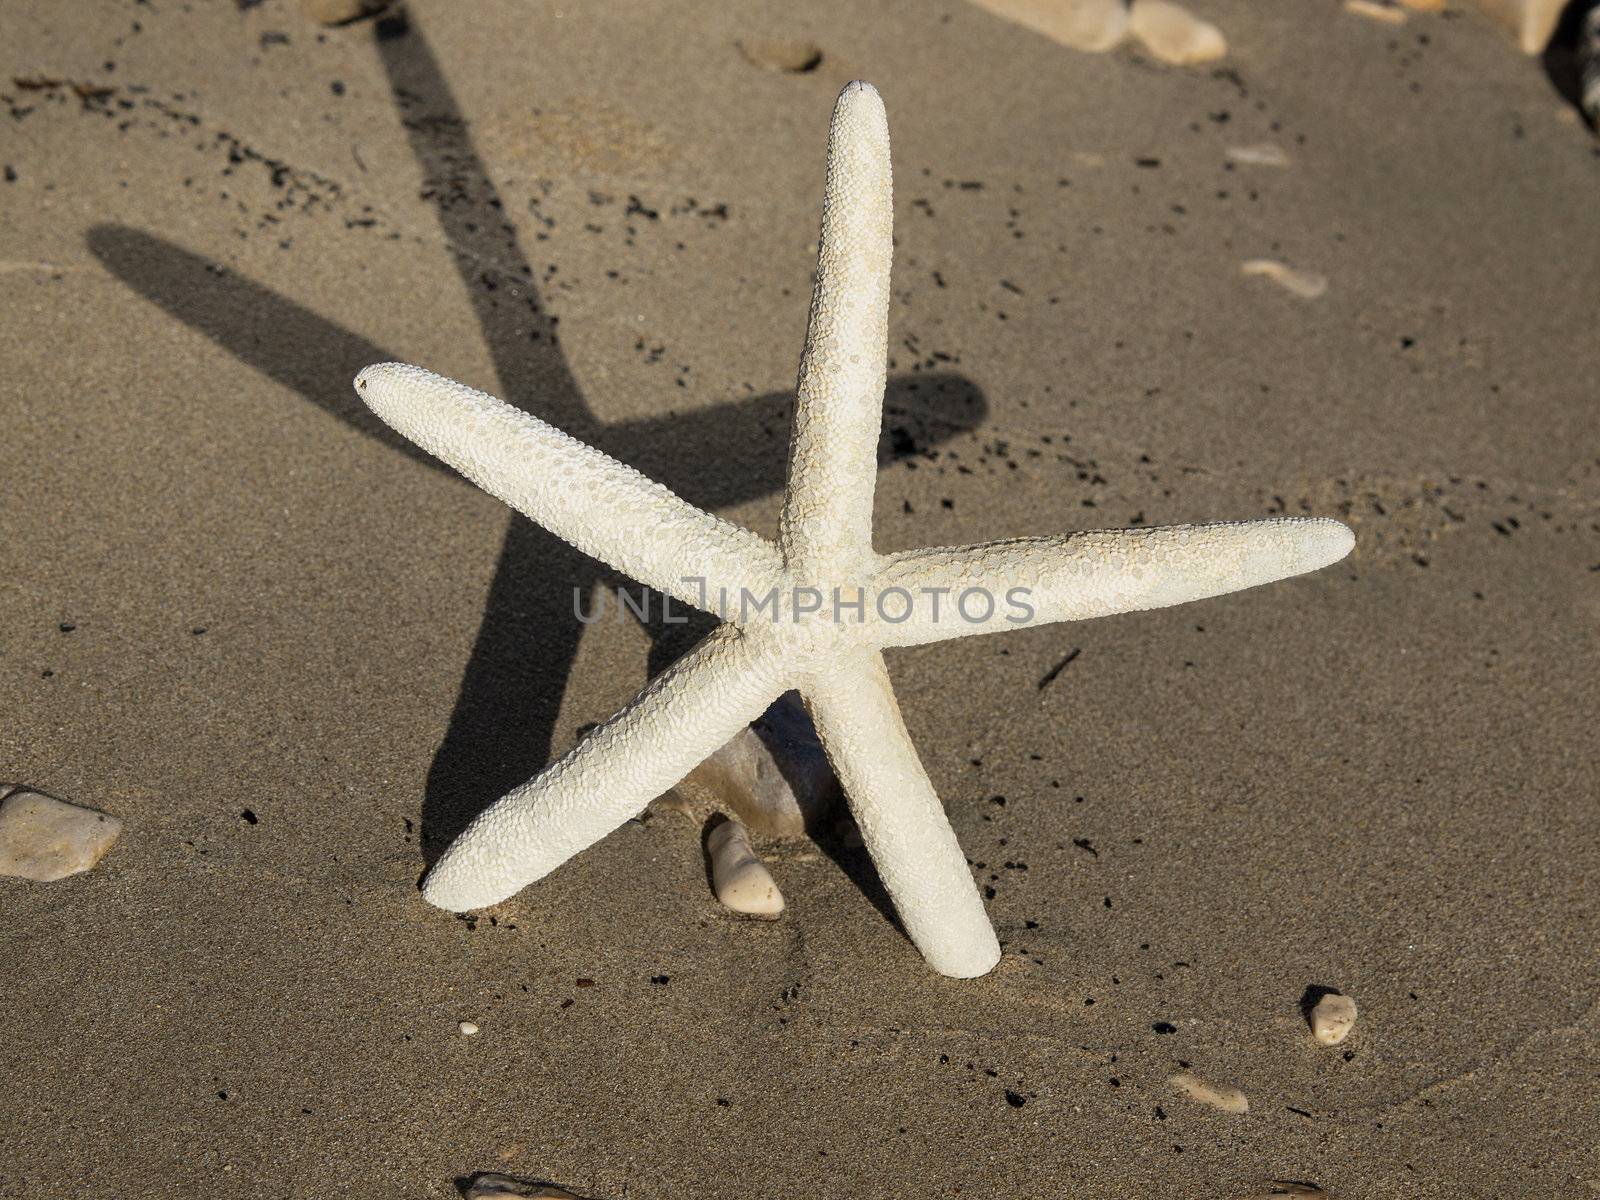 starfish on the sand beach near the sea